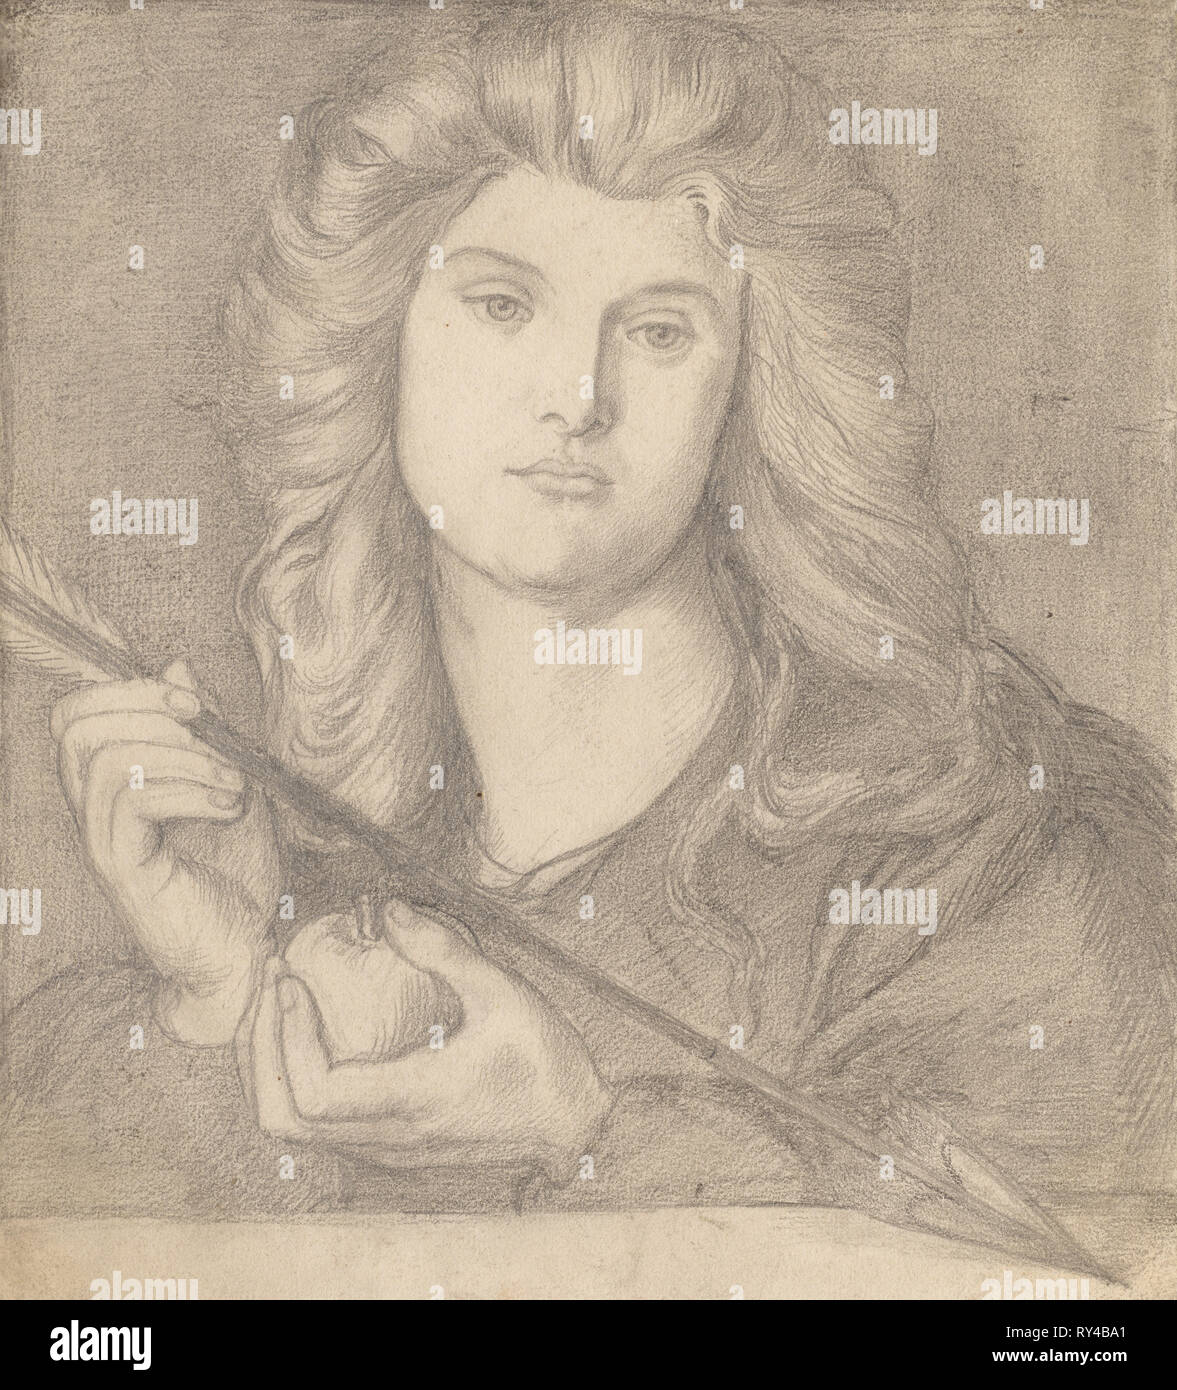 Study for 'Venus Verticordia'. Dante Gabriele Rossetti (British, 1828-1882). Pencil Stock Photo